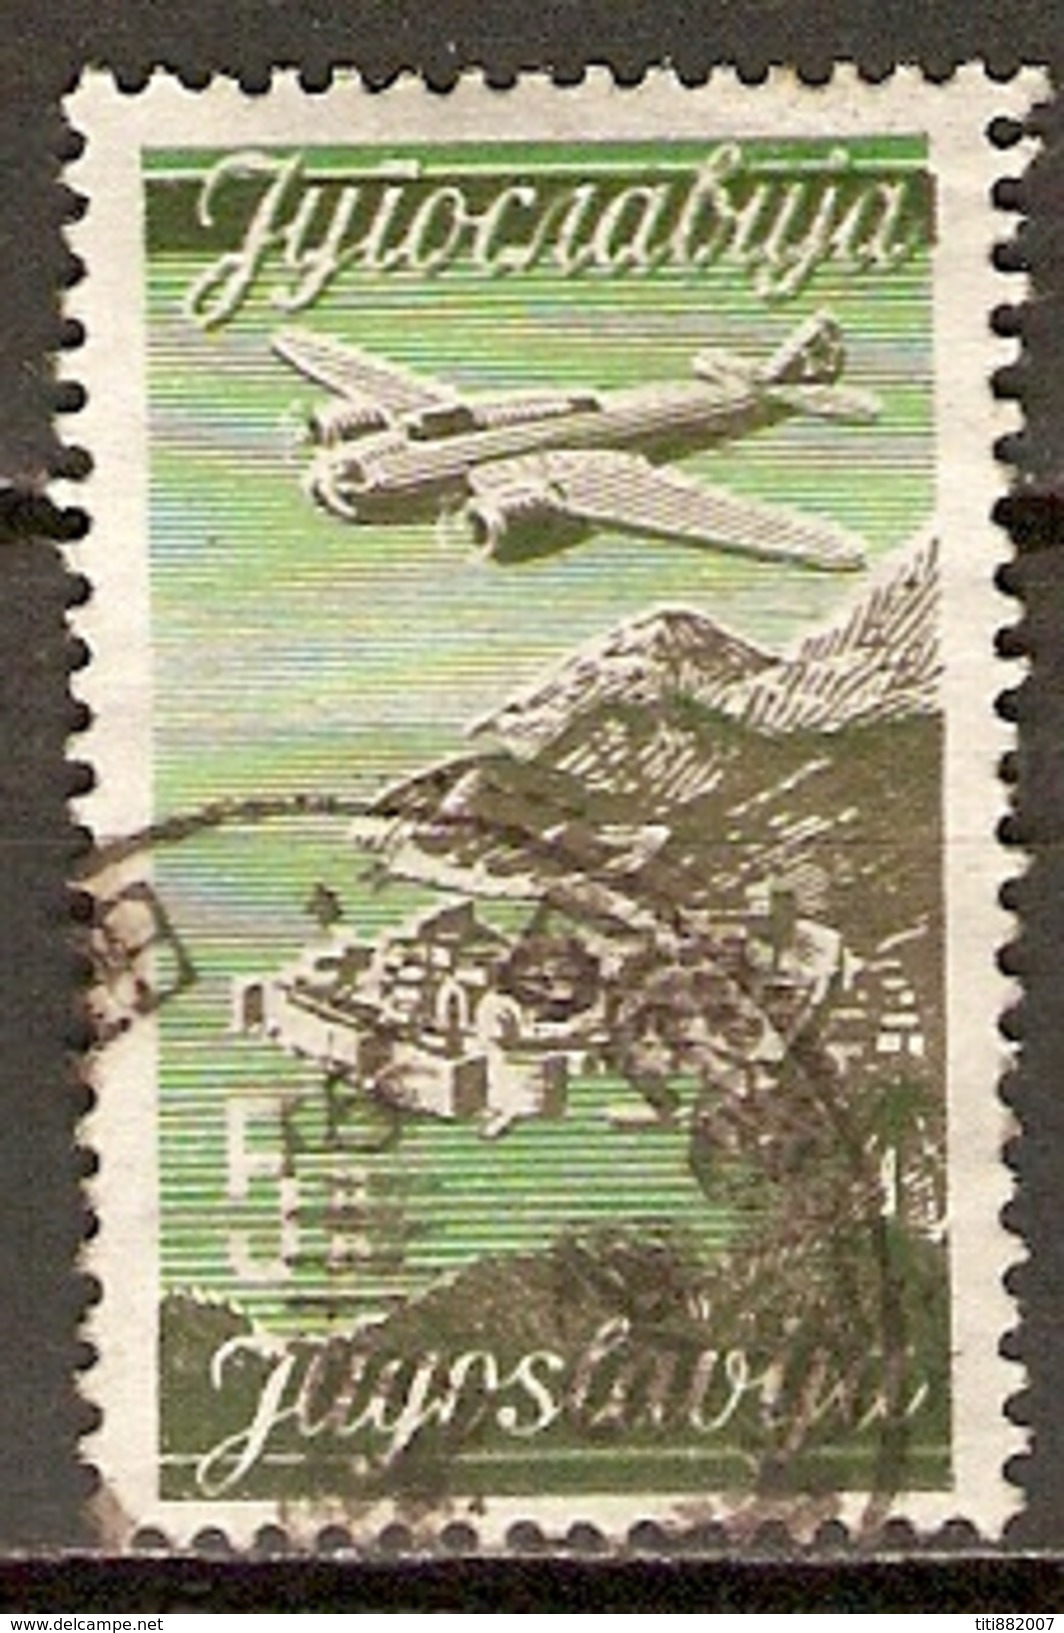 YOUGOSLAVIE     -    Aéro .   1947.   Y&T N° 20 Oblitéré.   Avion. - Aéreo